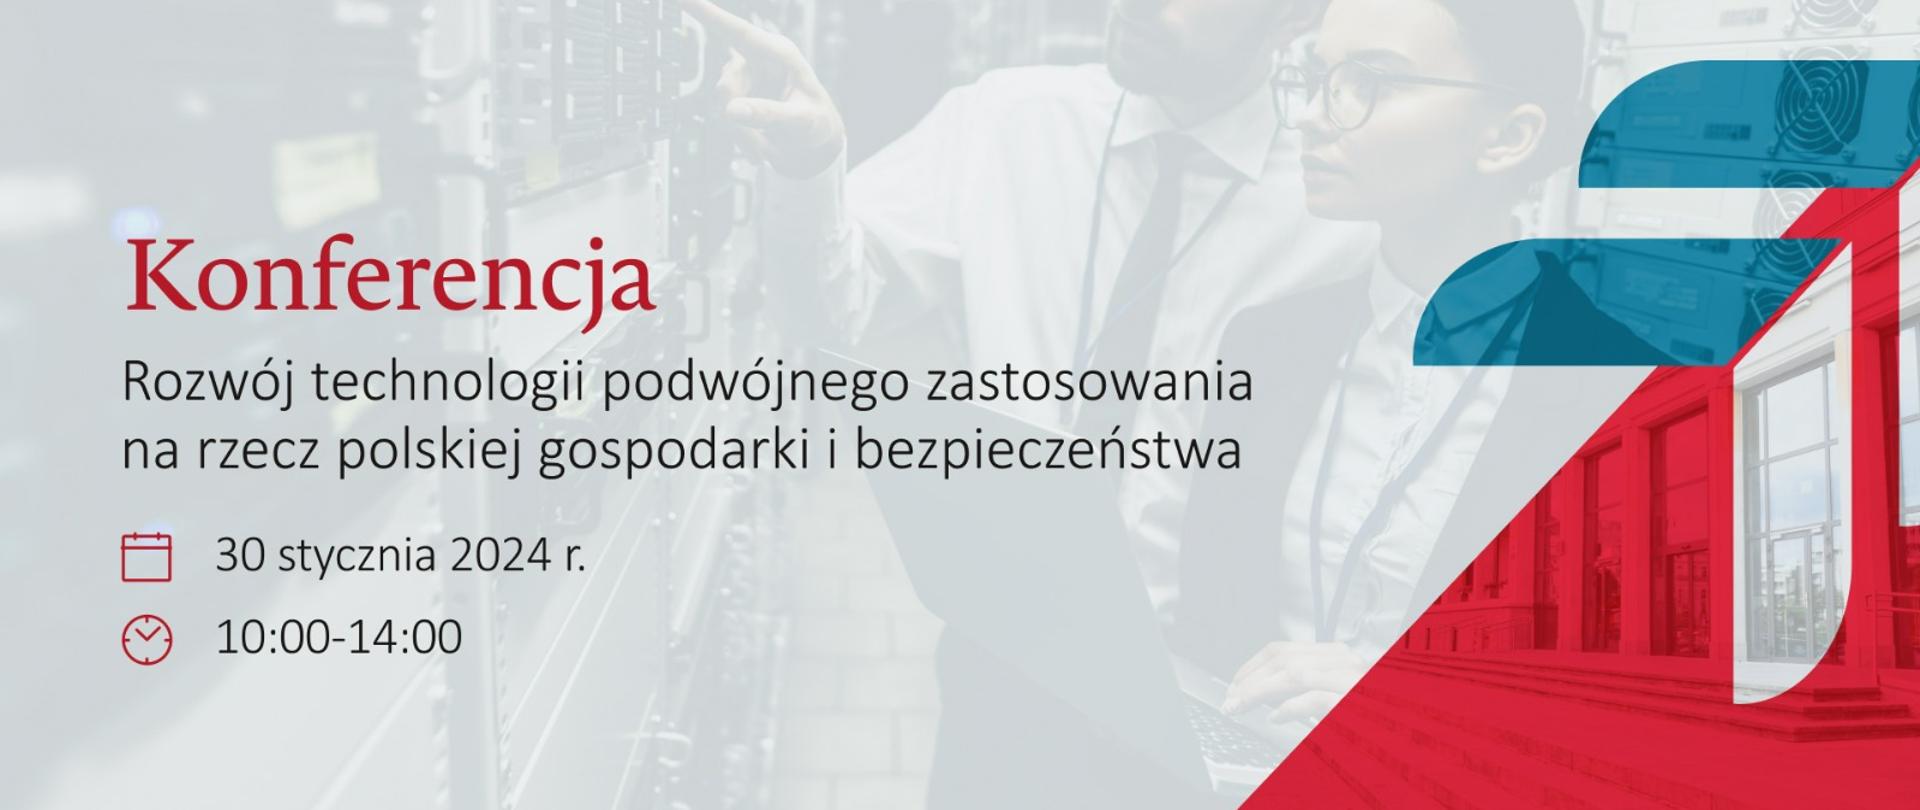 konferencja Rozwój technologii podwójnego zastosowania na rzecz polskiej gospodarki i bezpieczeństwa 